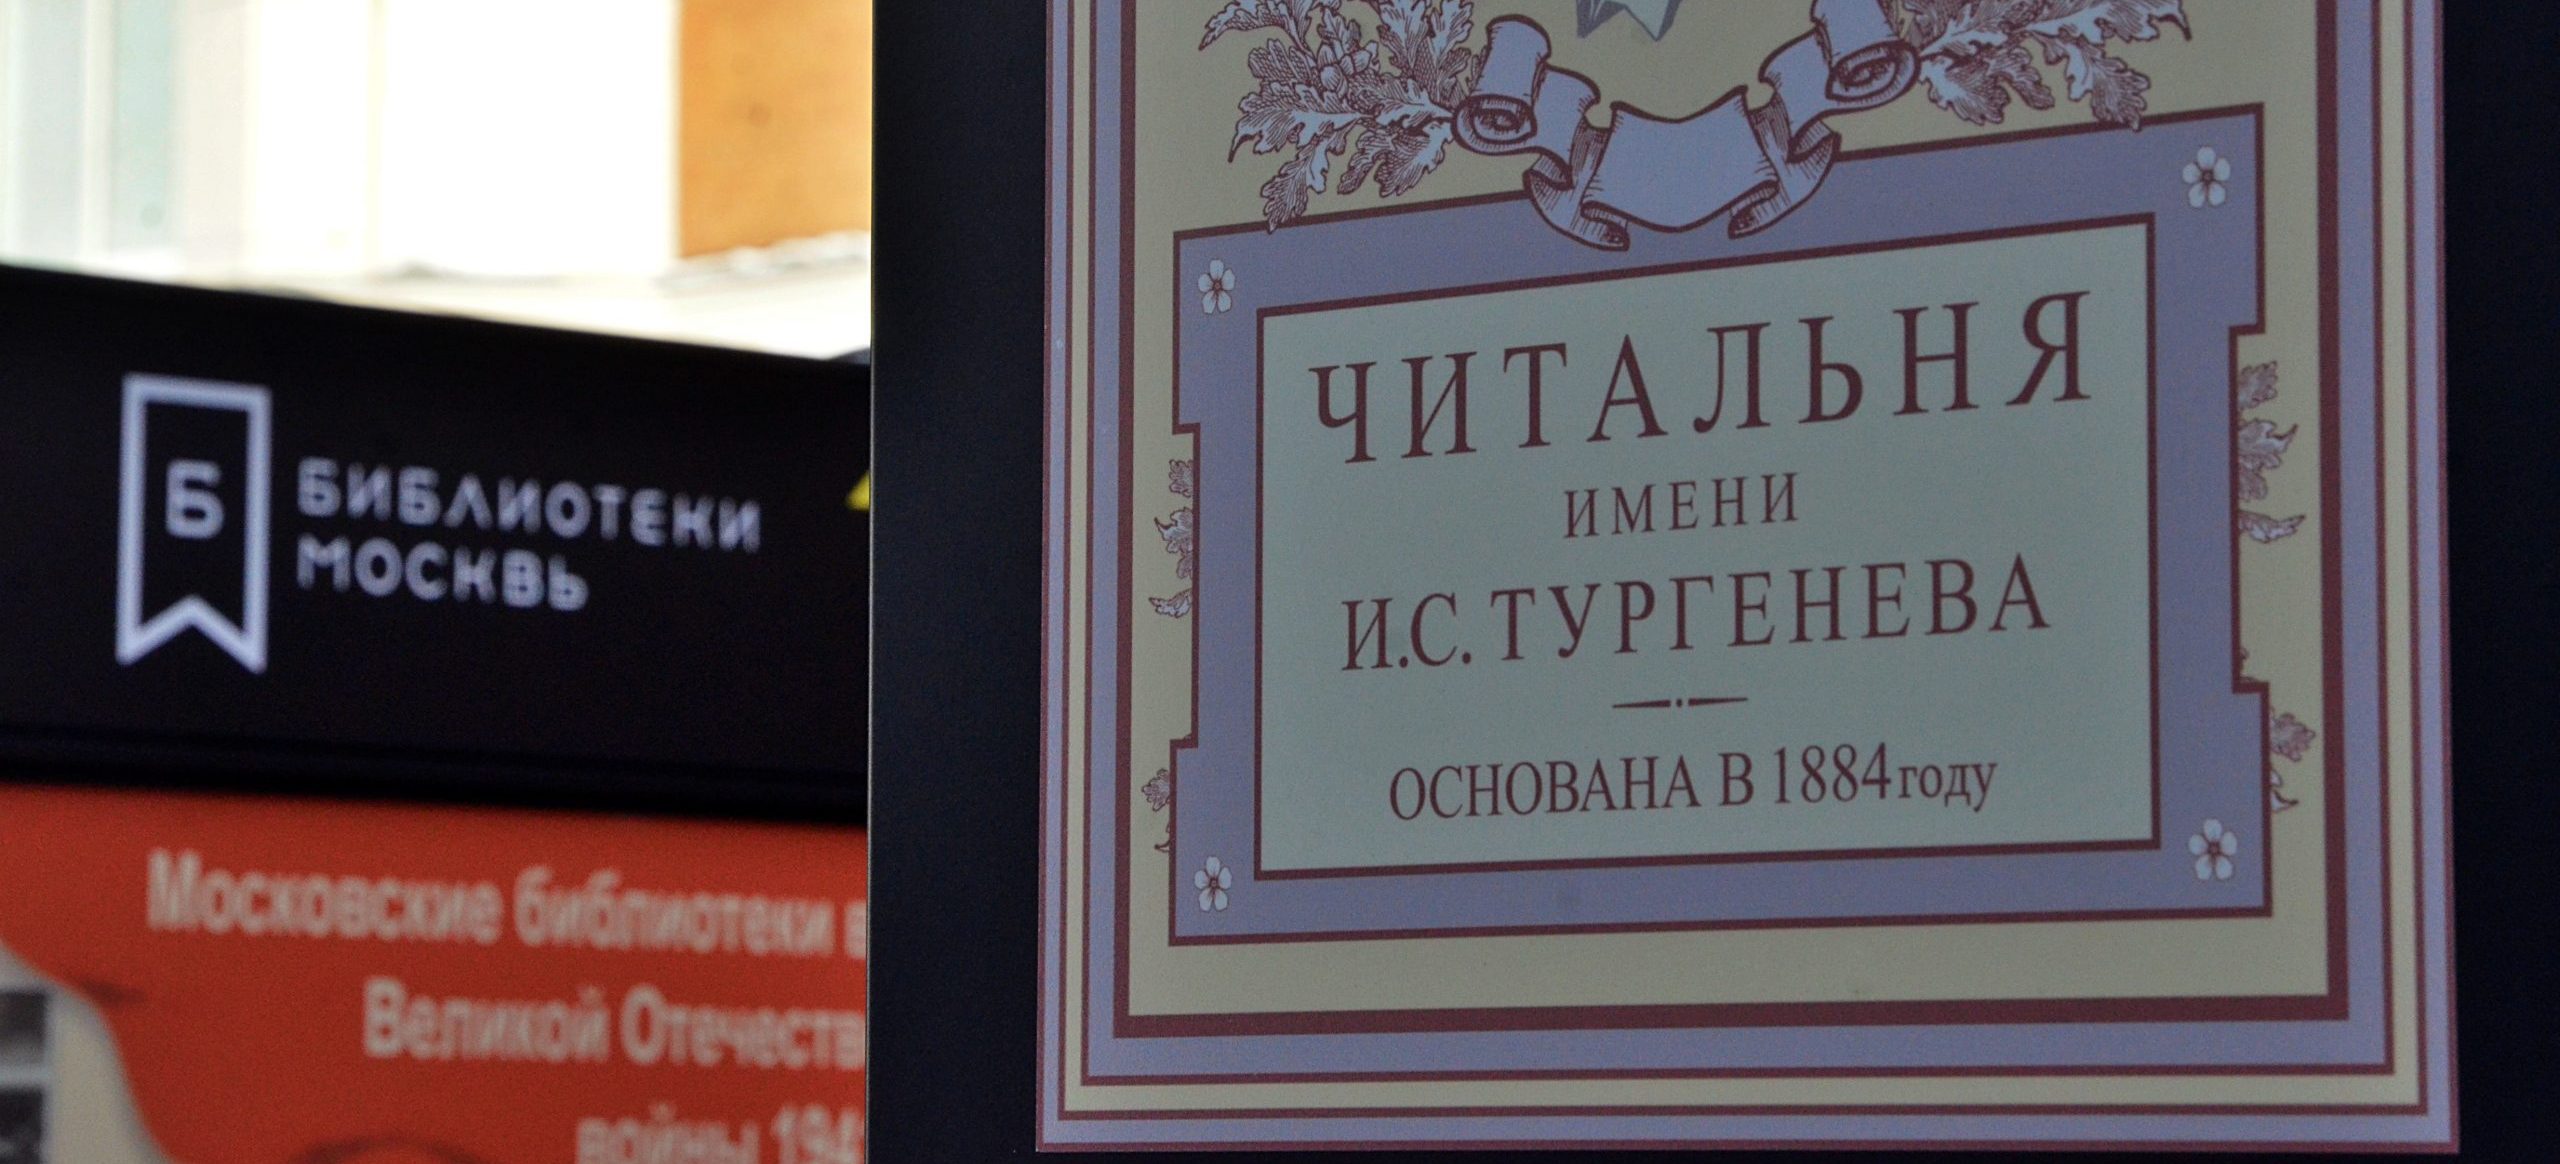 Булгаков и Гоголь: новый цикл лекций начнут в Тургеневской библиотеке. Фото: Анна Быкова